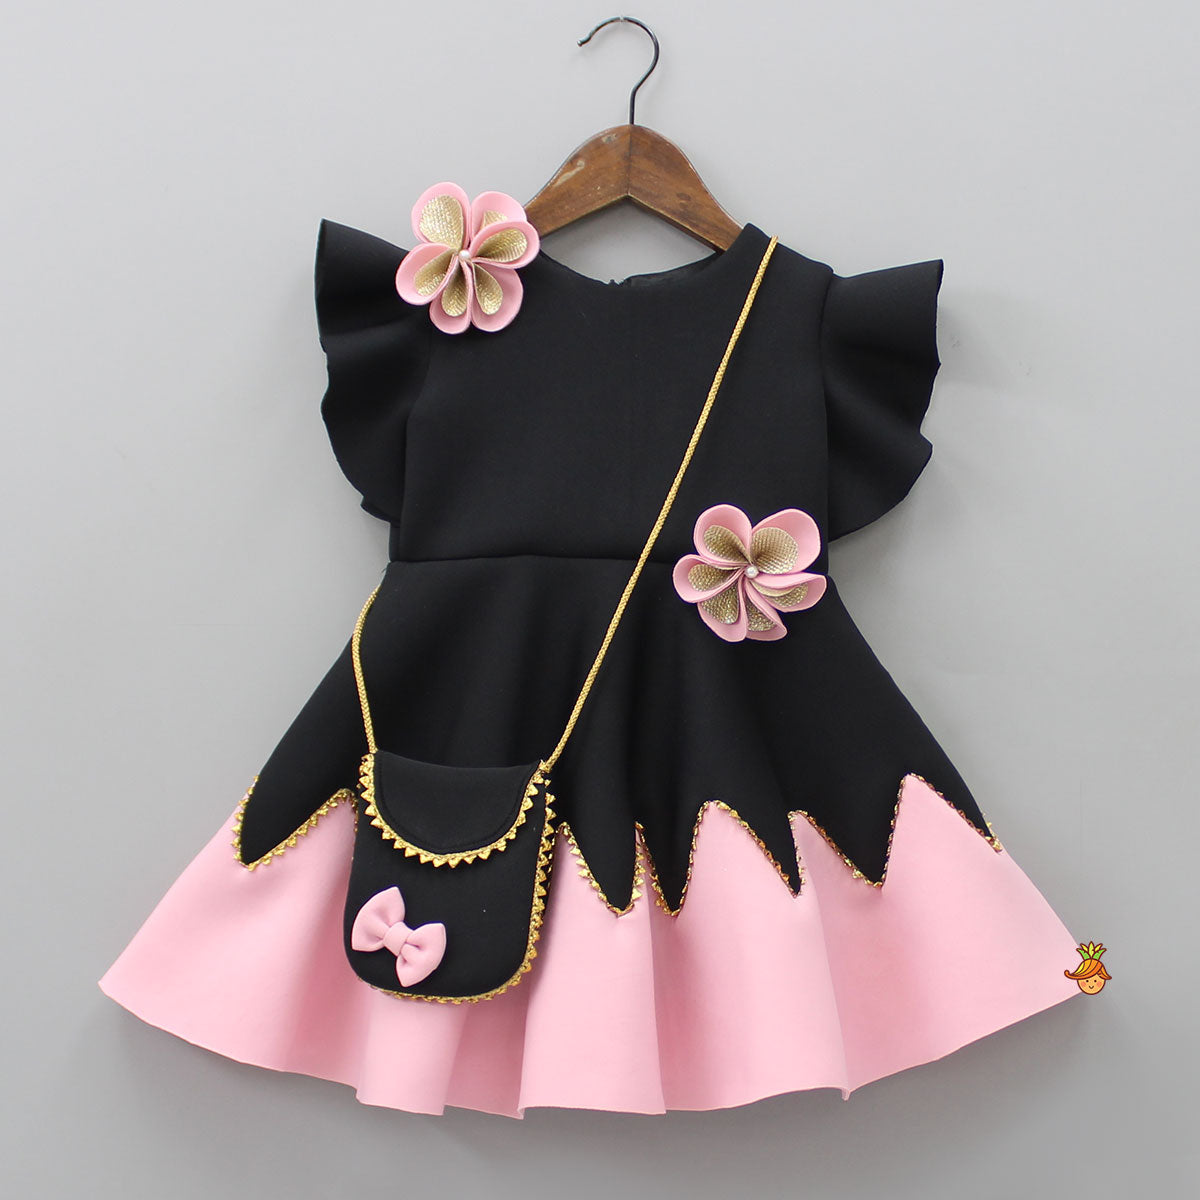 Flower Embellished Black Dress With Sling Bag